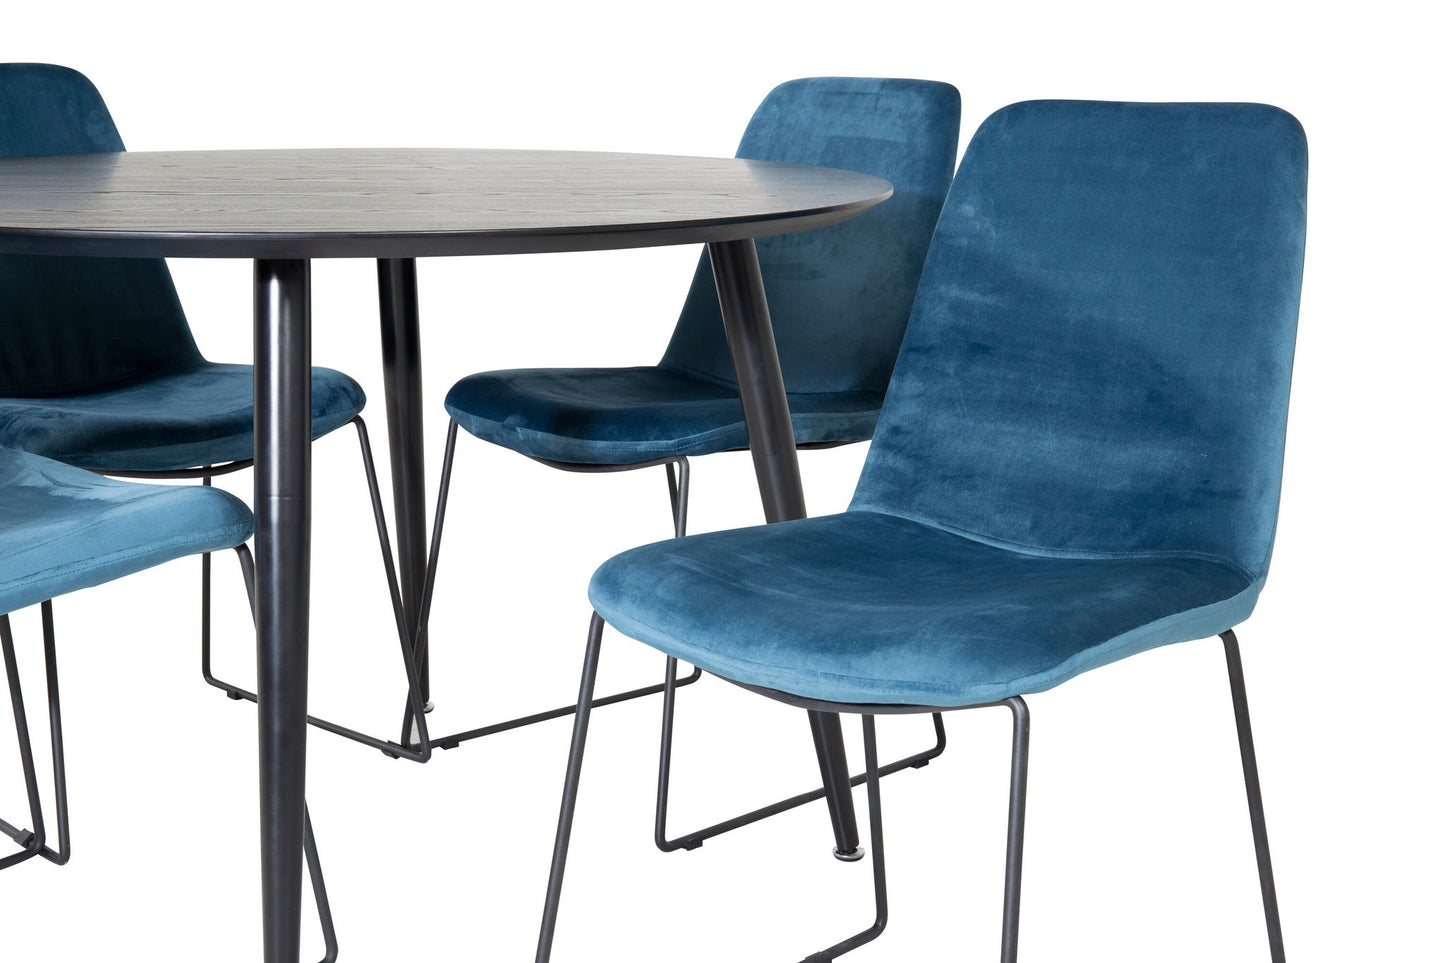 Dipp - Spisebord, 115cm - Sort finér / All sort ben + Muce Spisebordsstol - Sorte ben - Blå velour